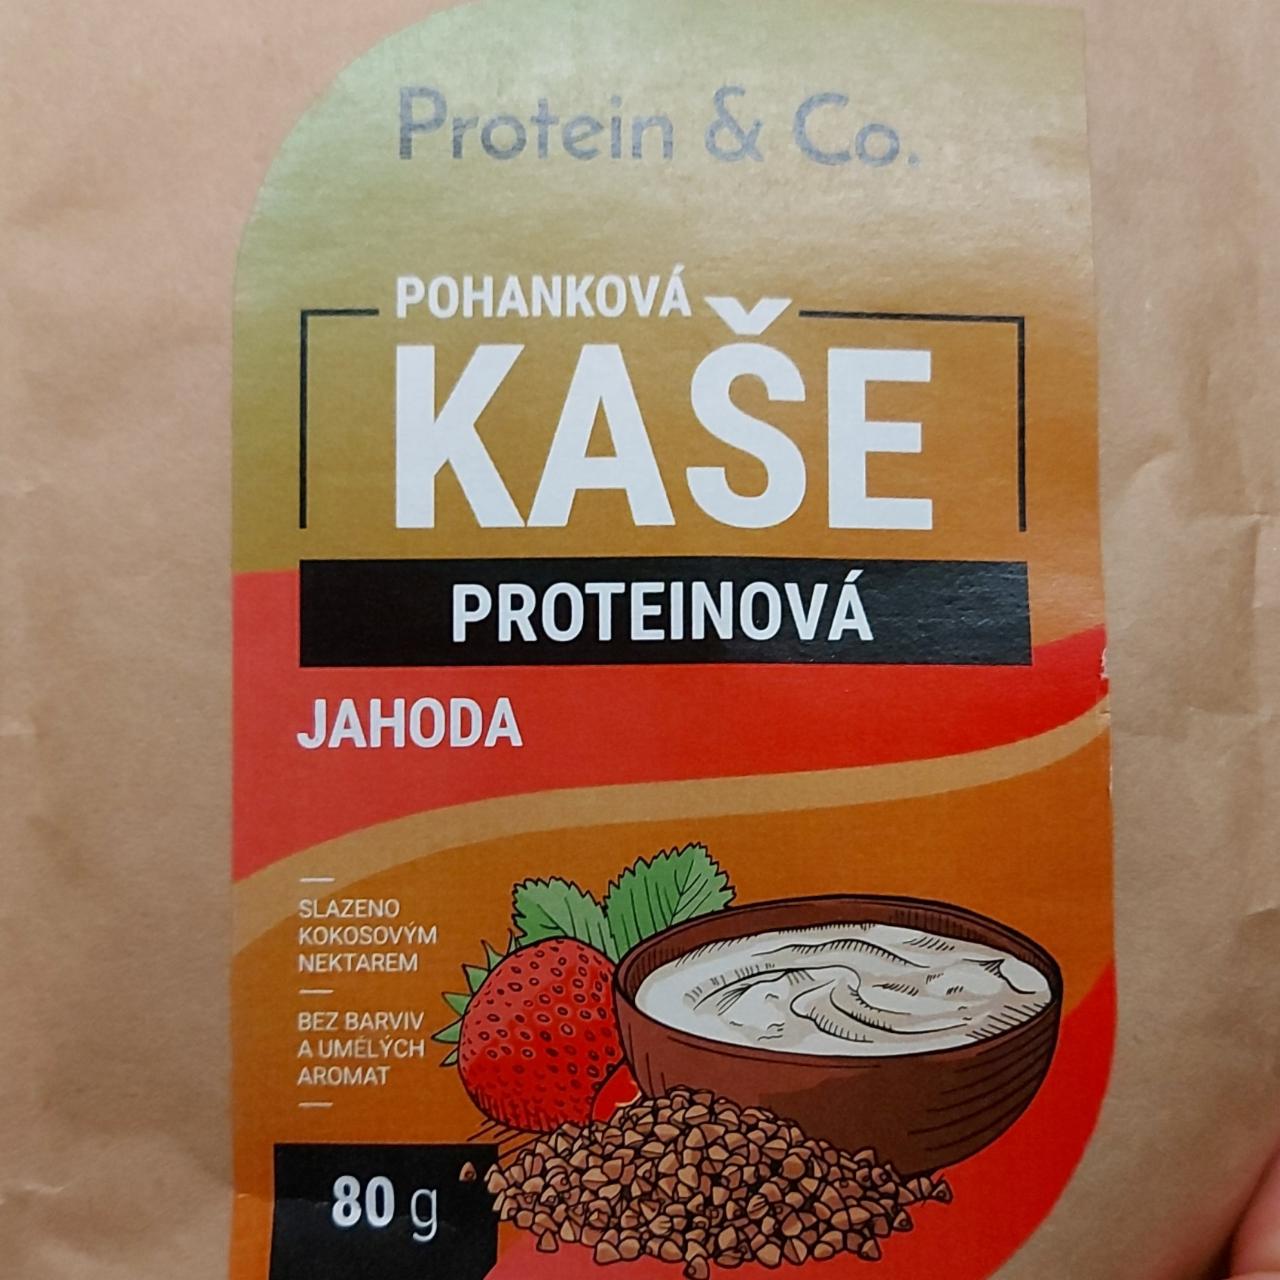 Fotografie - Pohanková kaše proteinová jahoda Protein & Co.